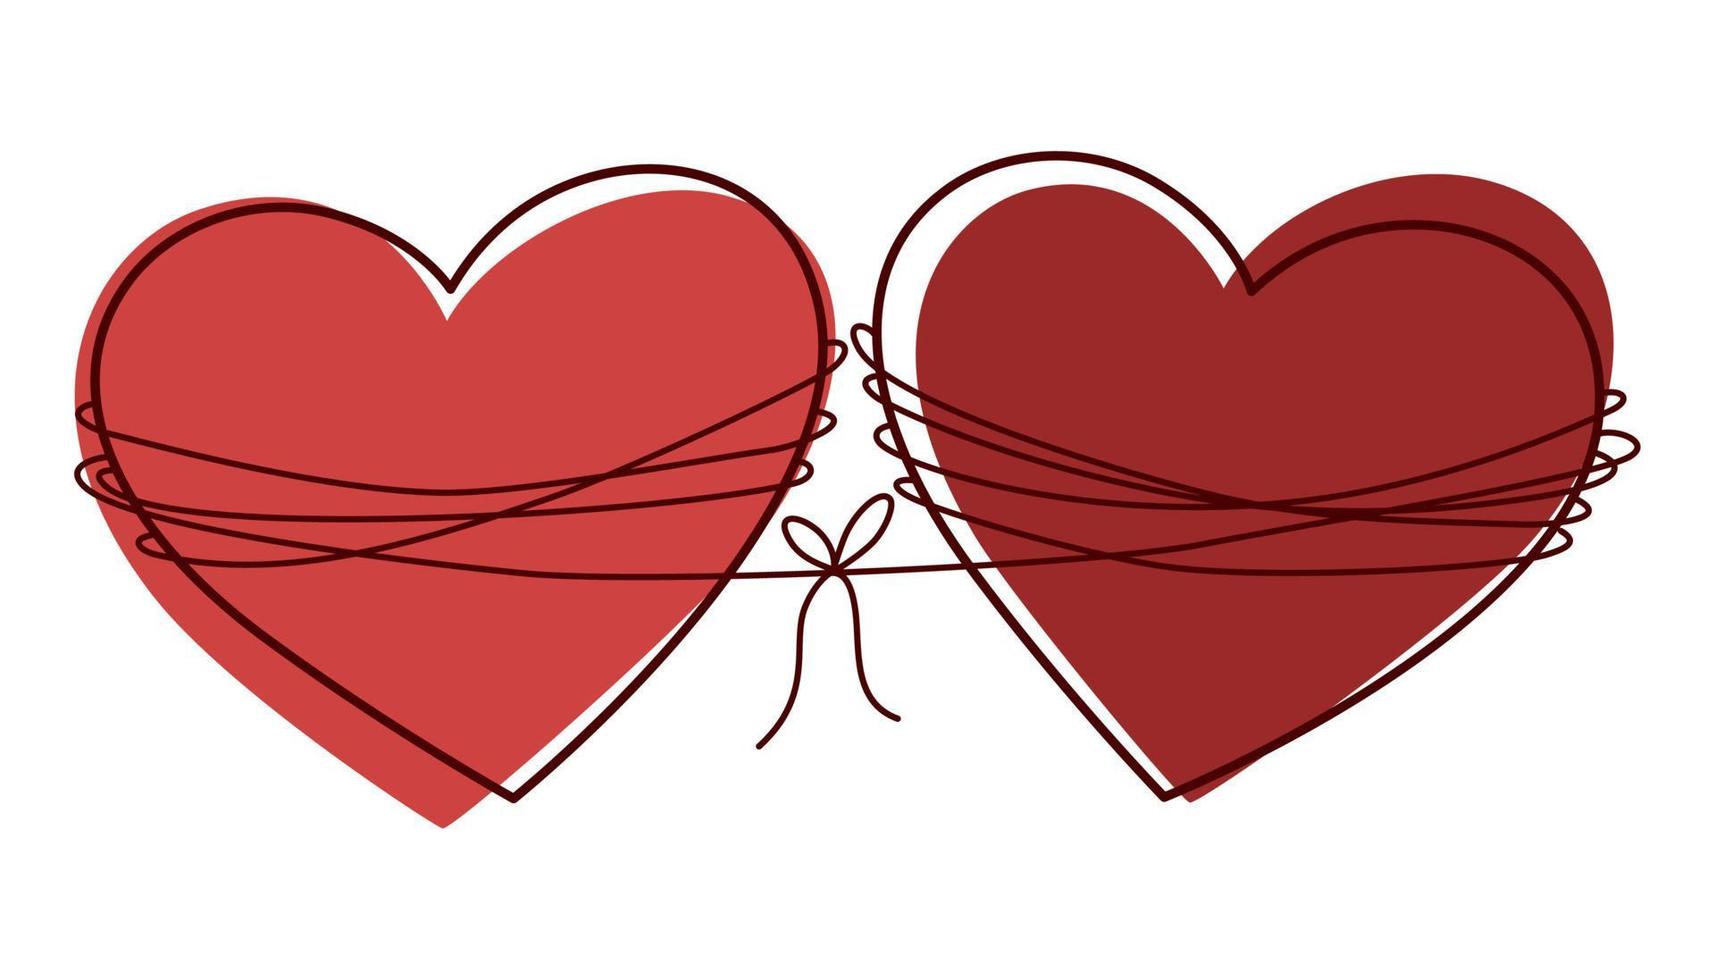 cœur. concept d'amitié et d'amour. dessin d'art en ligne continue. parfait pour imprimer des cartes postales et la Saint-Valentin. illustration vectorielle de dessin à la main. vecteur